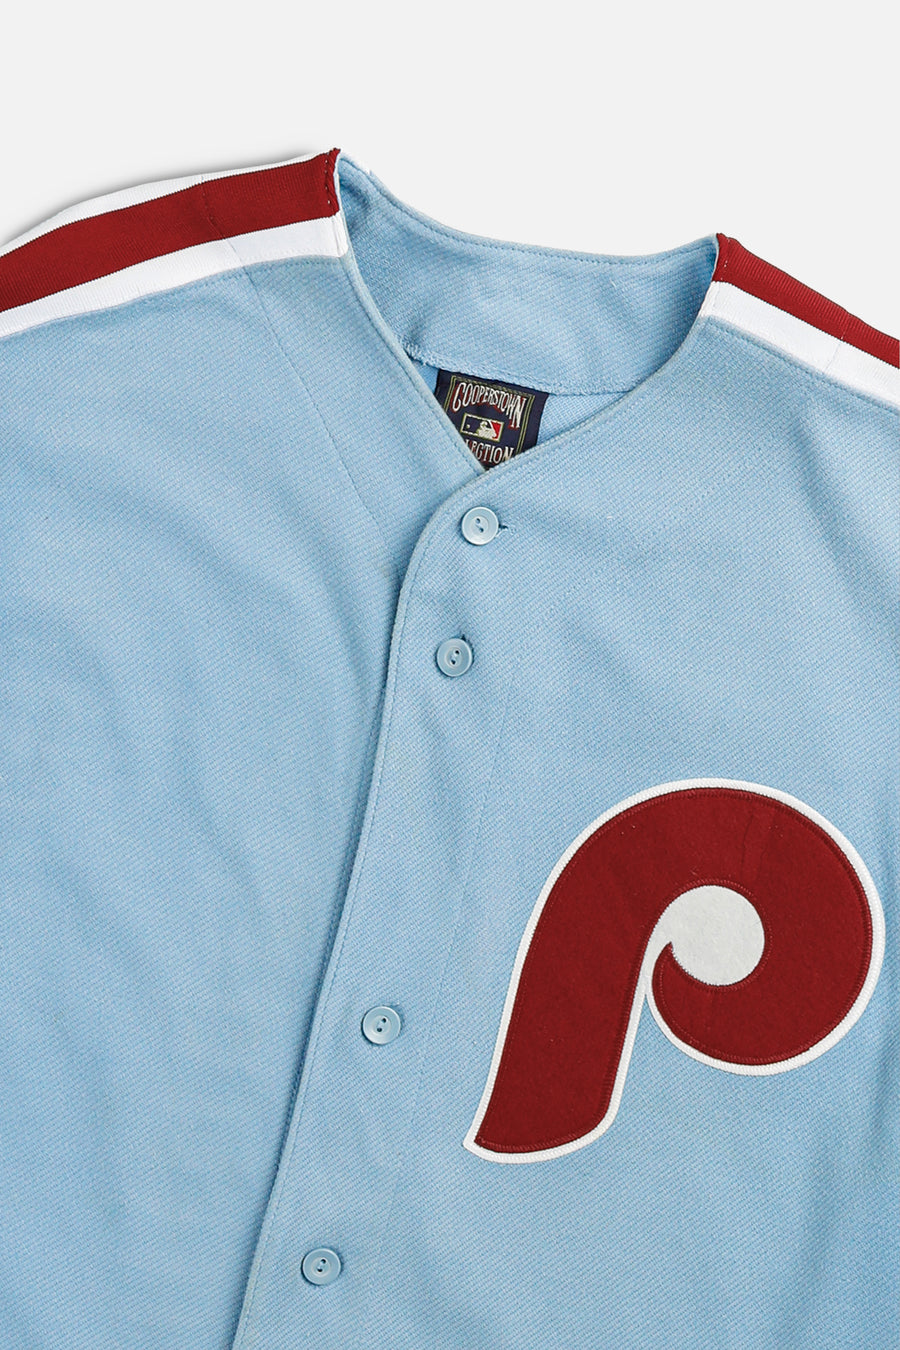 Vintage Philadelphia Phillies MLB Jersey - L